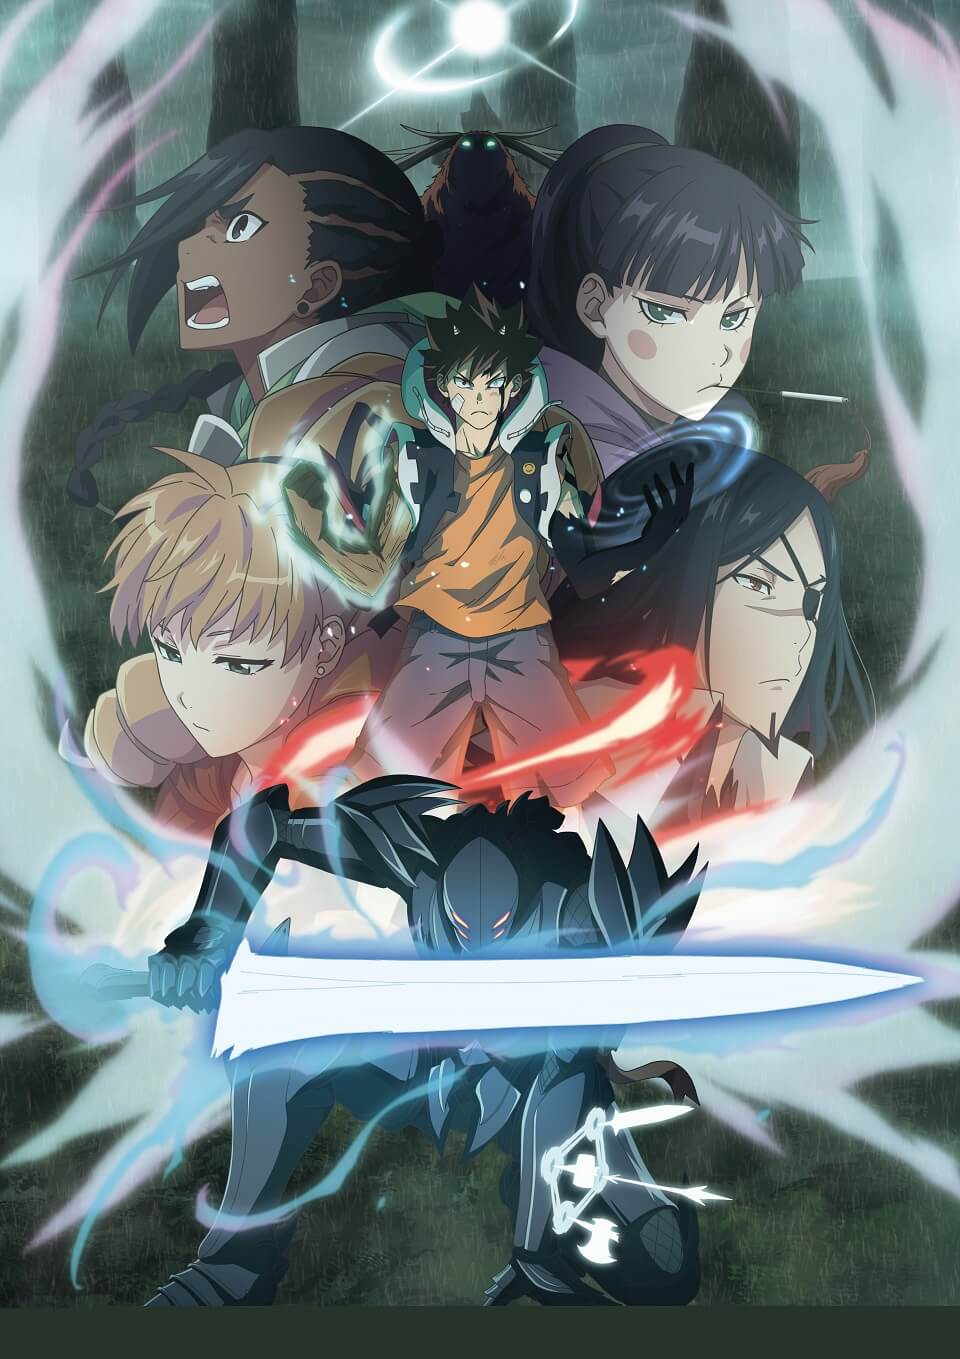 Radiant Fantasy TV Anime Season 2 Opening & Ending Theme Details